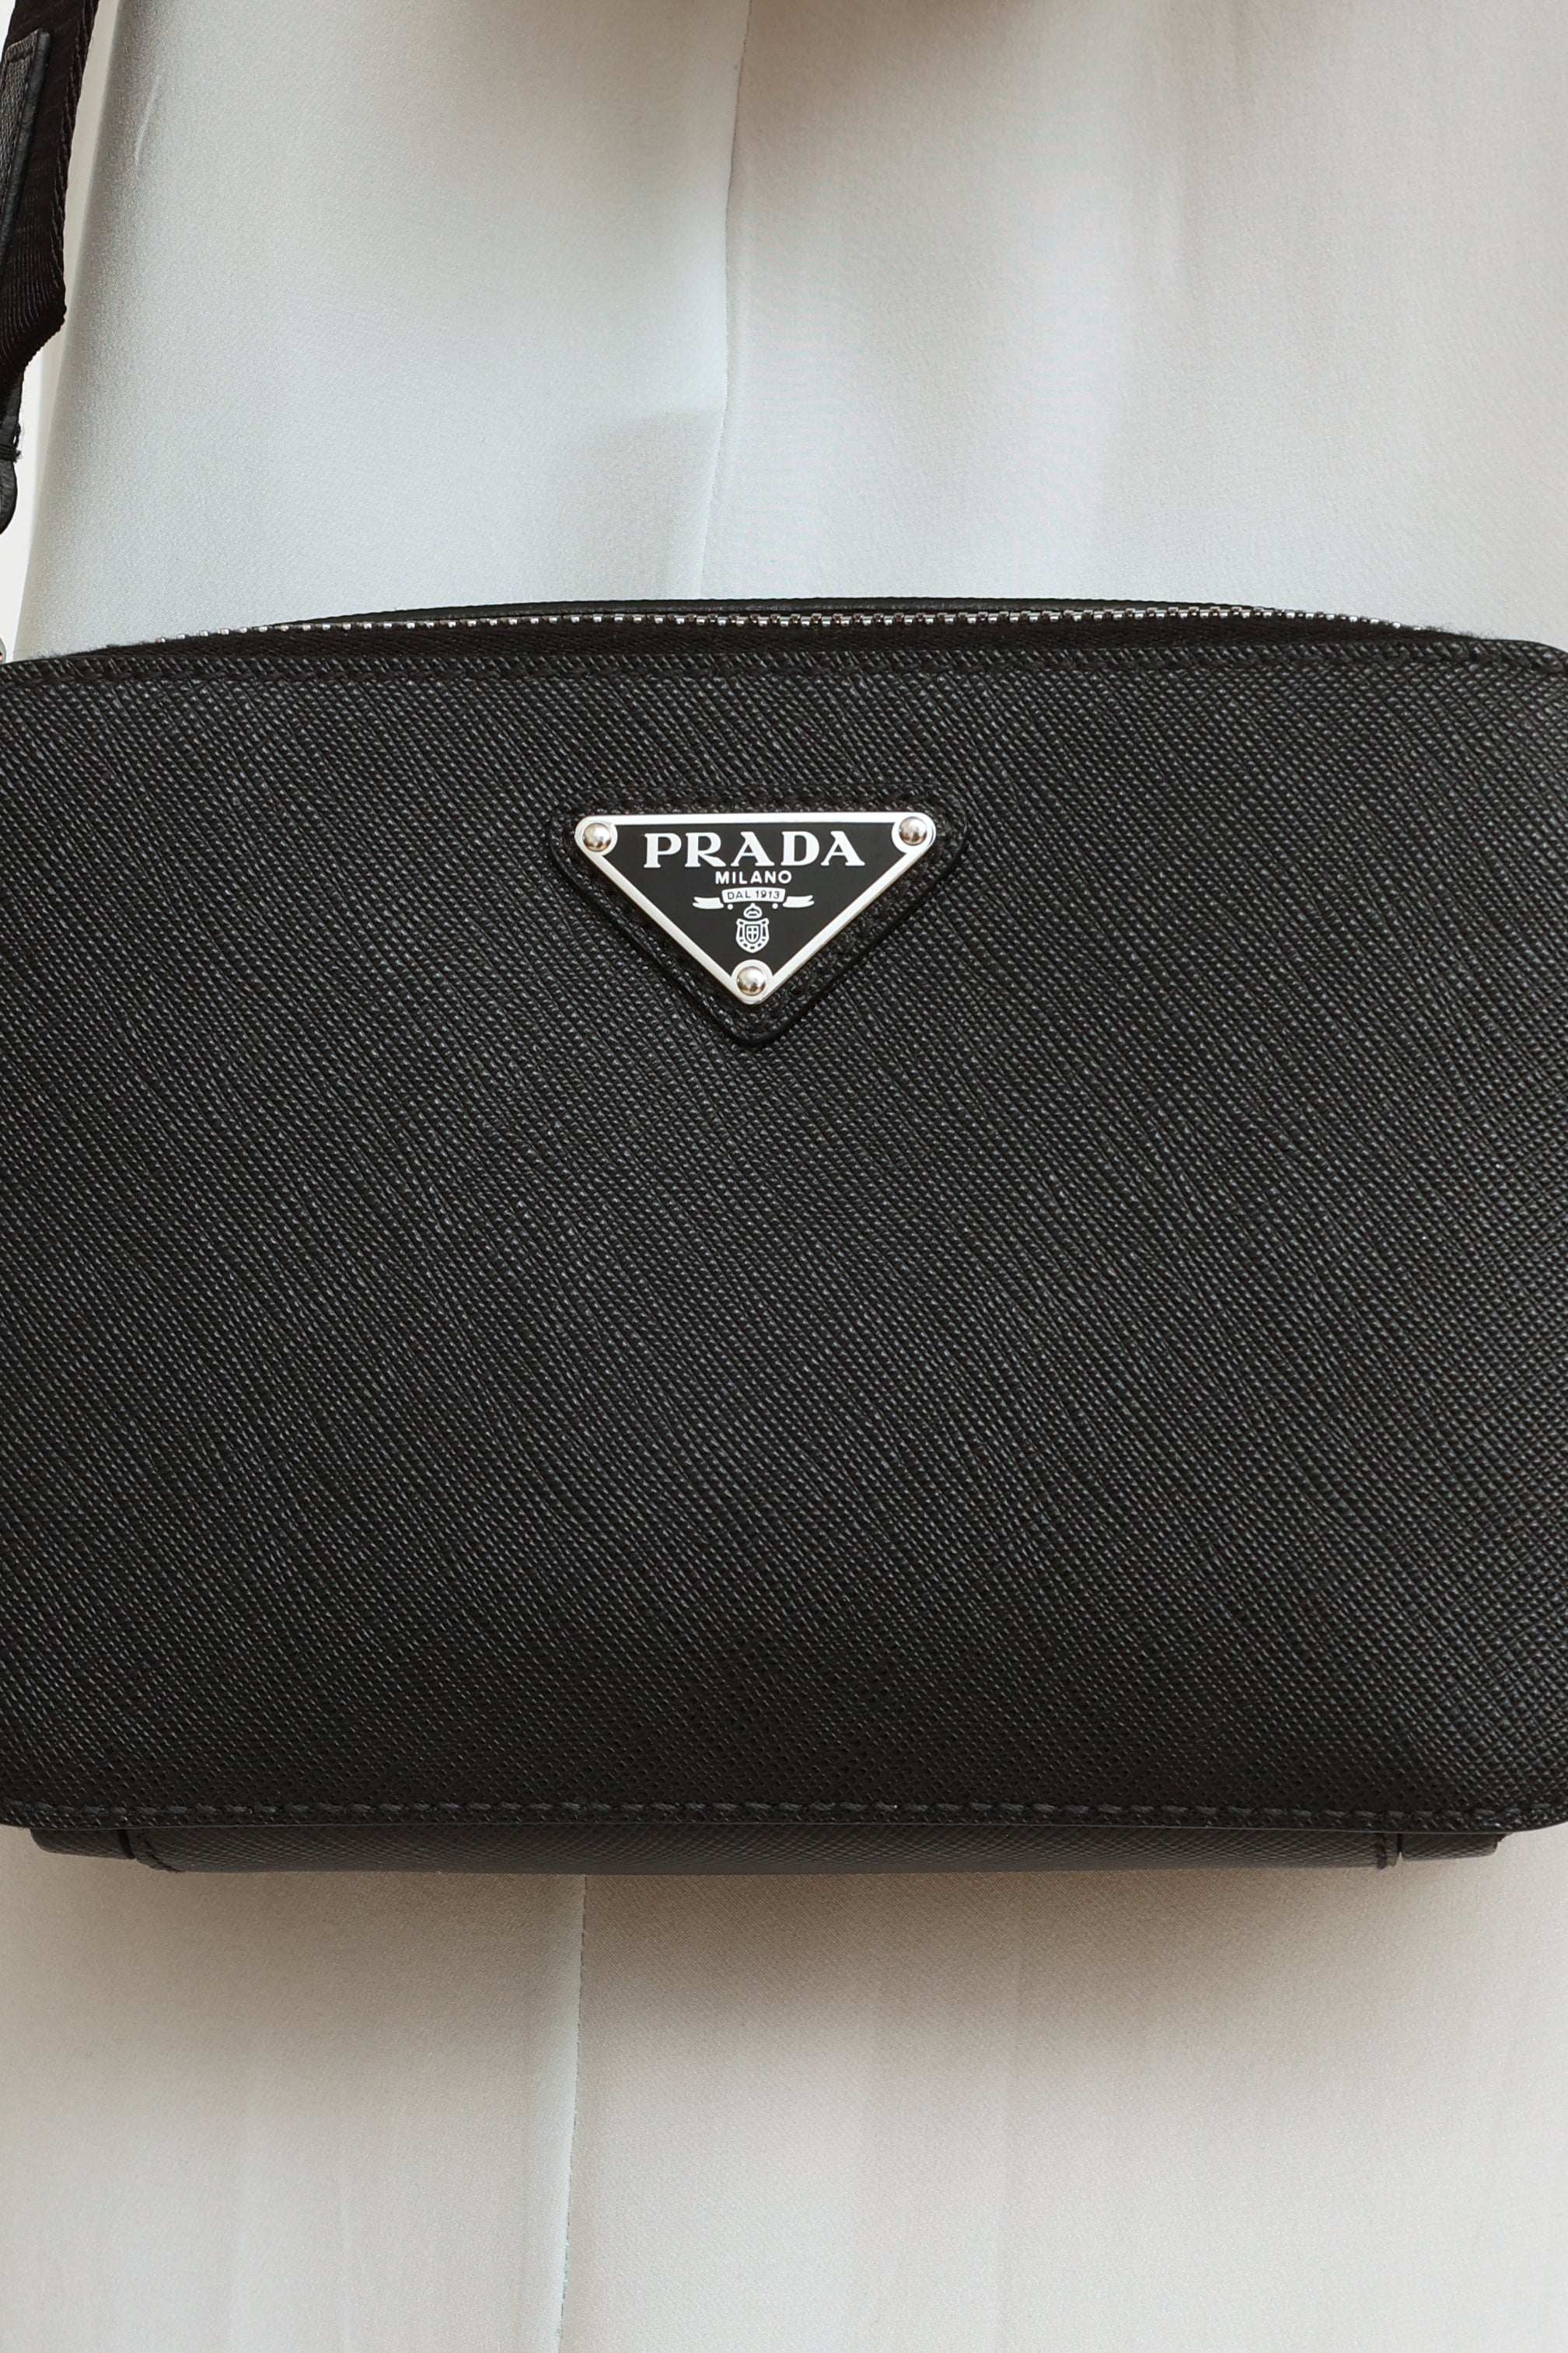 Prada // Black Saffiano Brique Bag – VSP Consignment